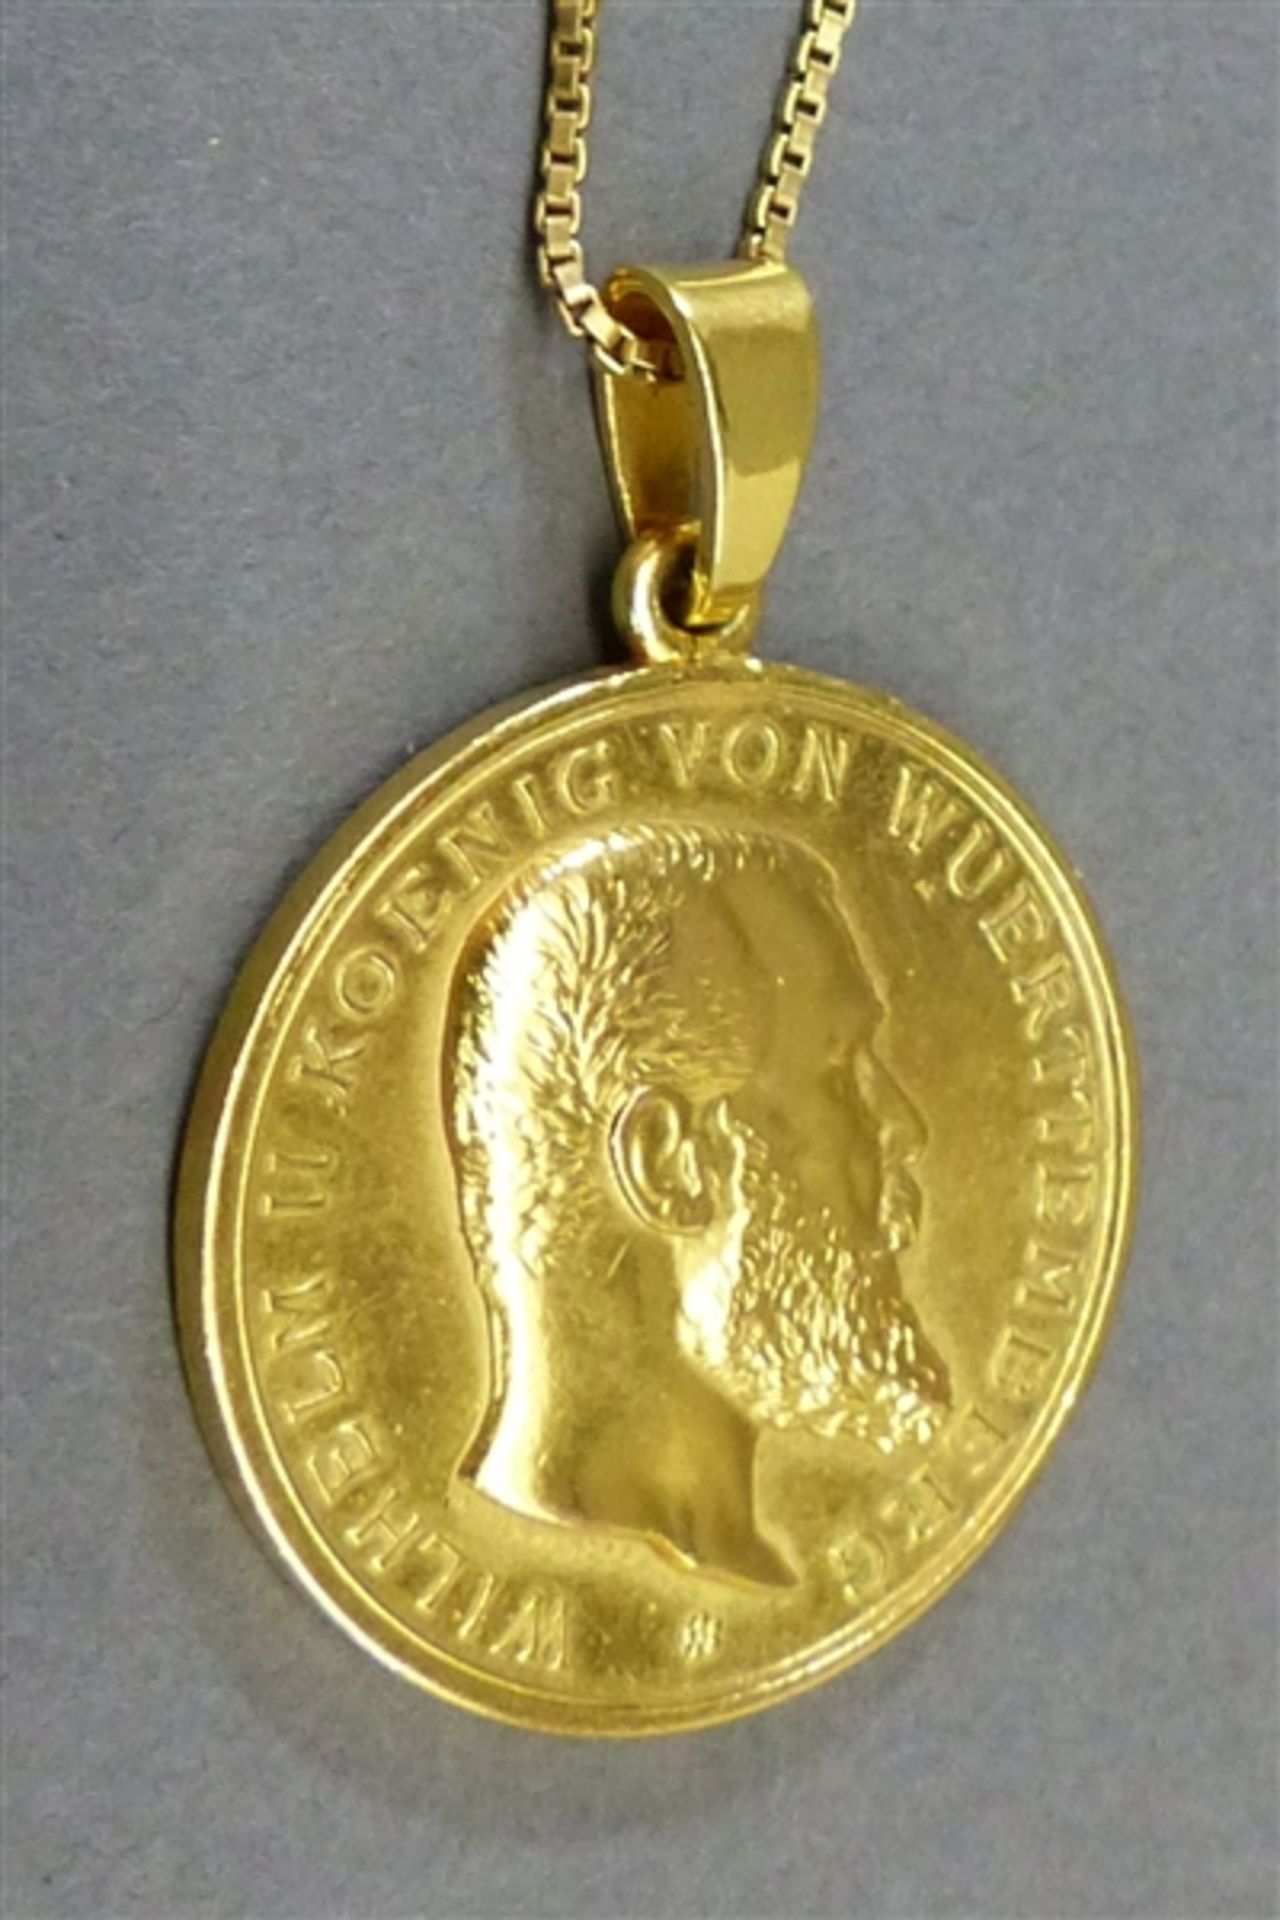 Verdienst Medaille des Kronordens 18 kt. Gelbgold, "Dem Verdienste", Wilhelm II., König von